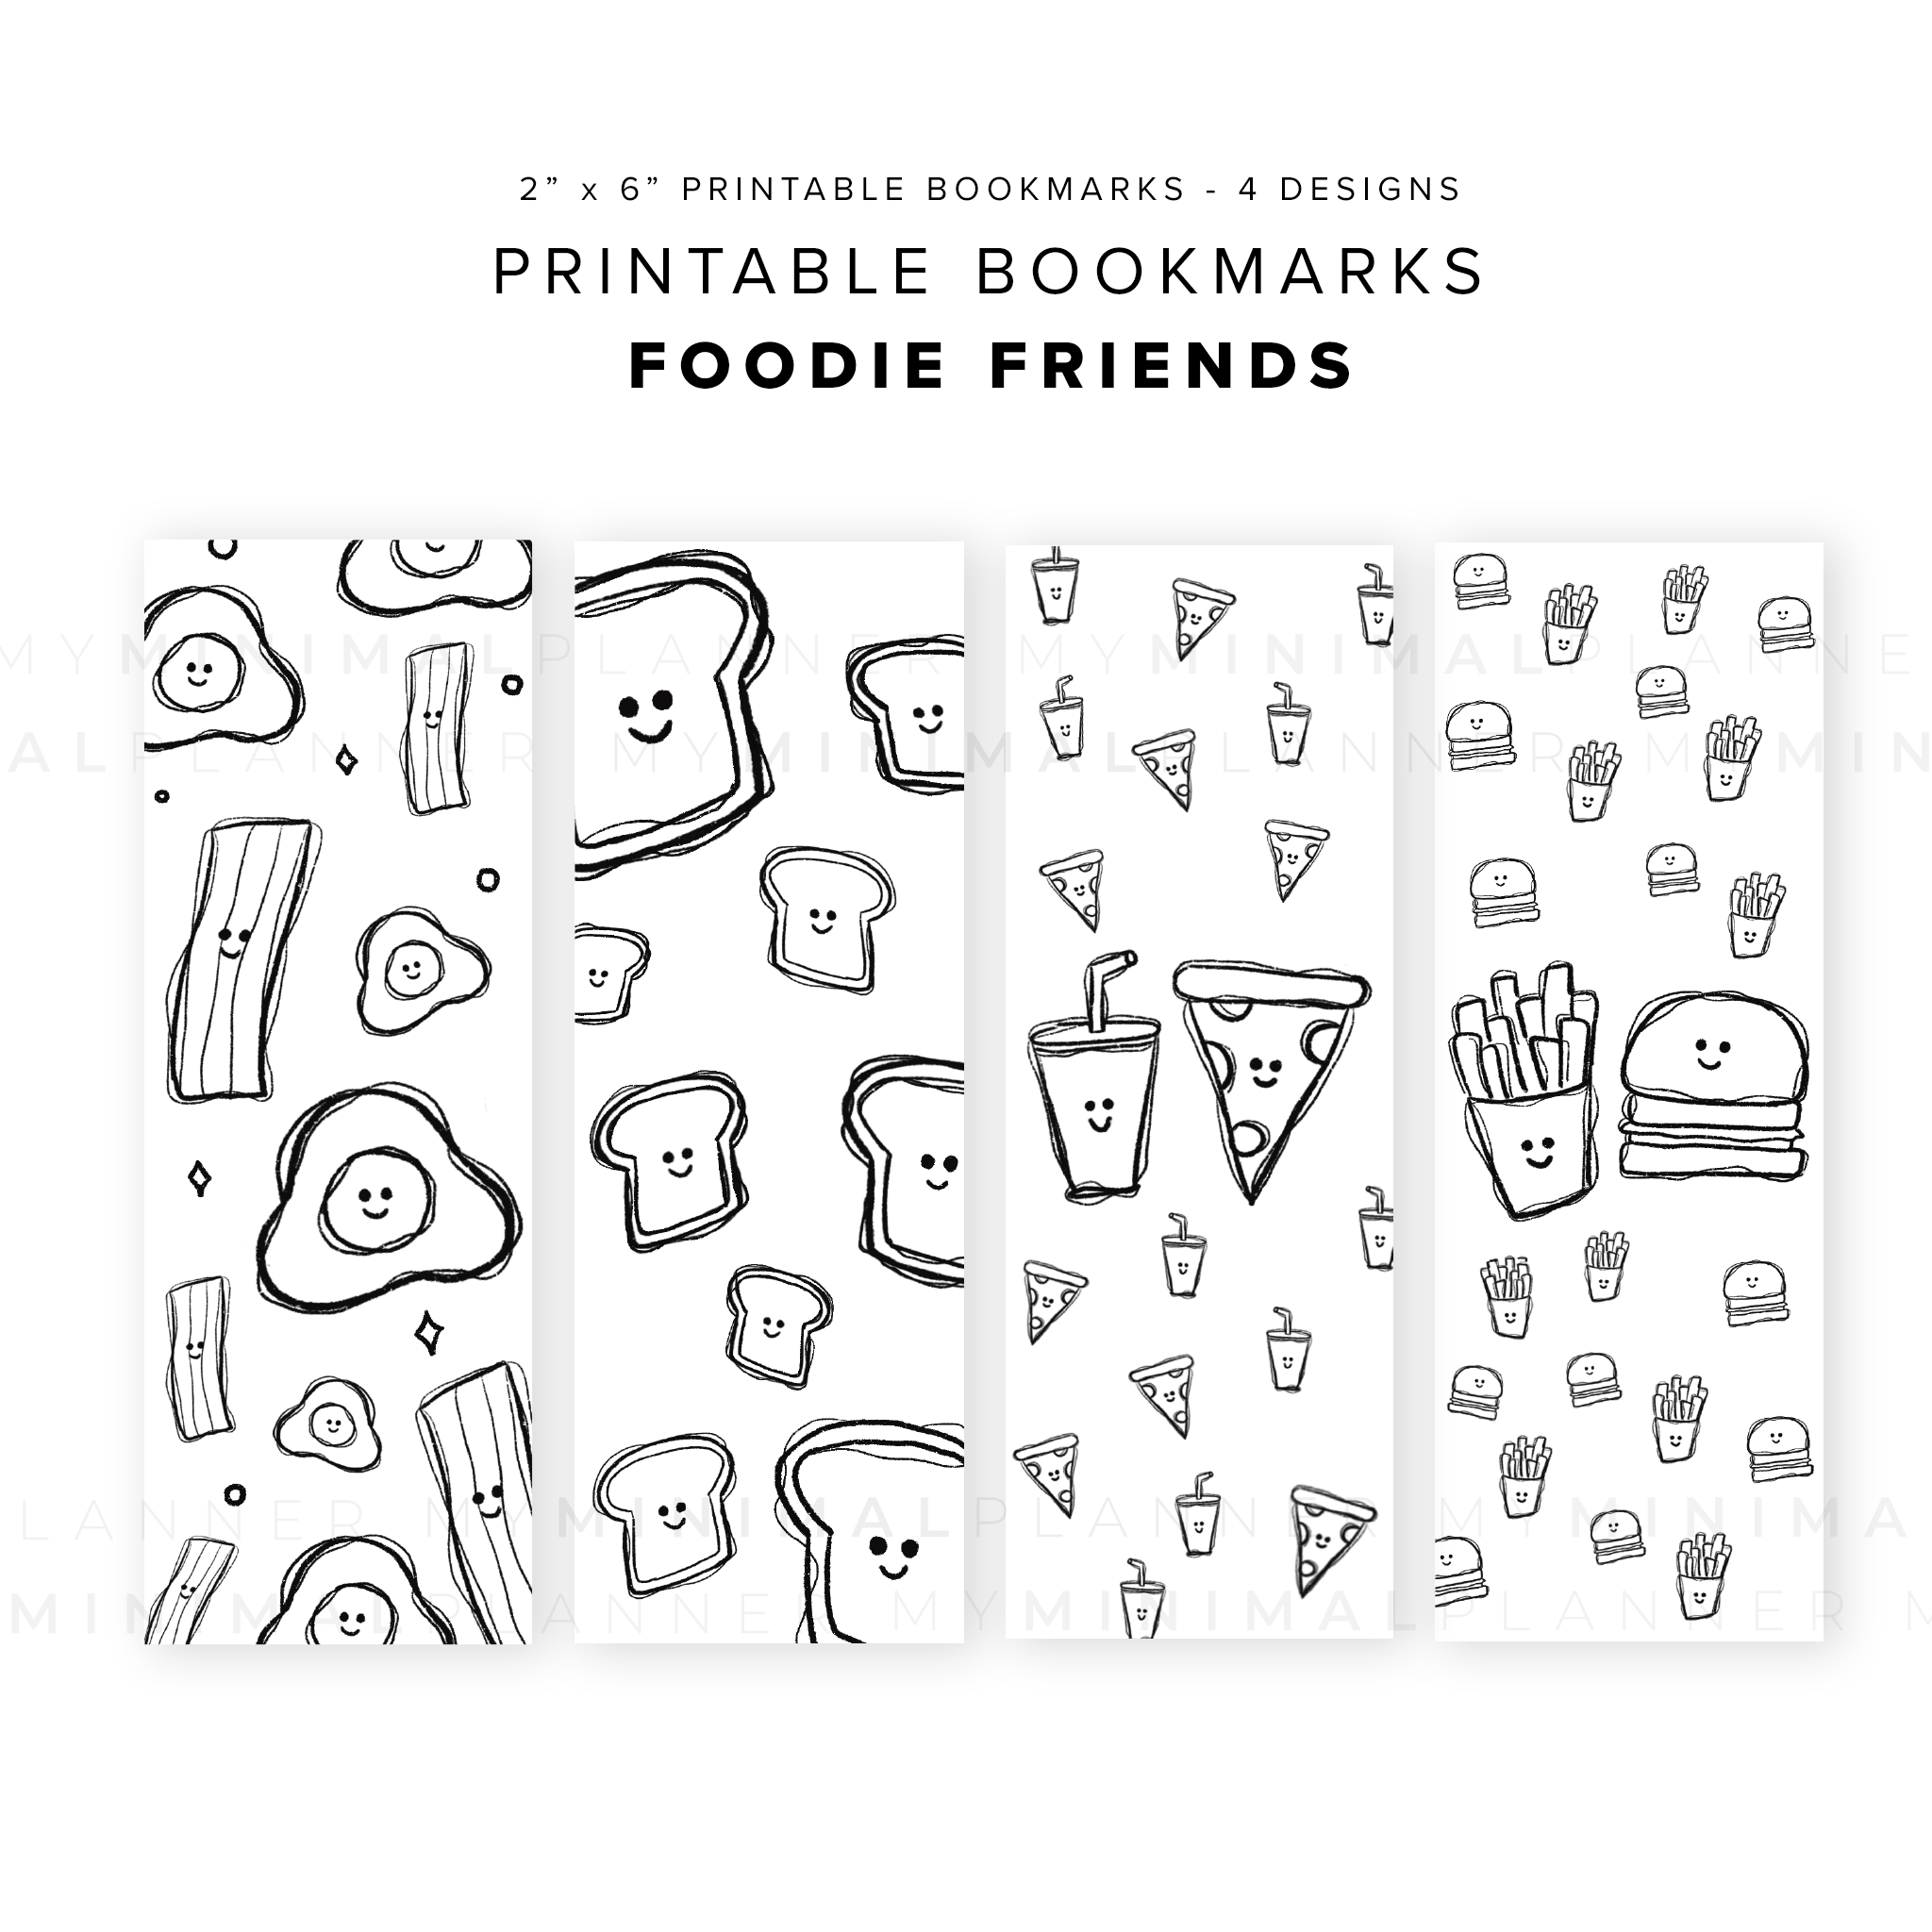 PB01 - Foodie Friends - Printable Bookmarks